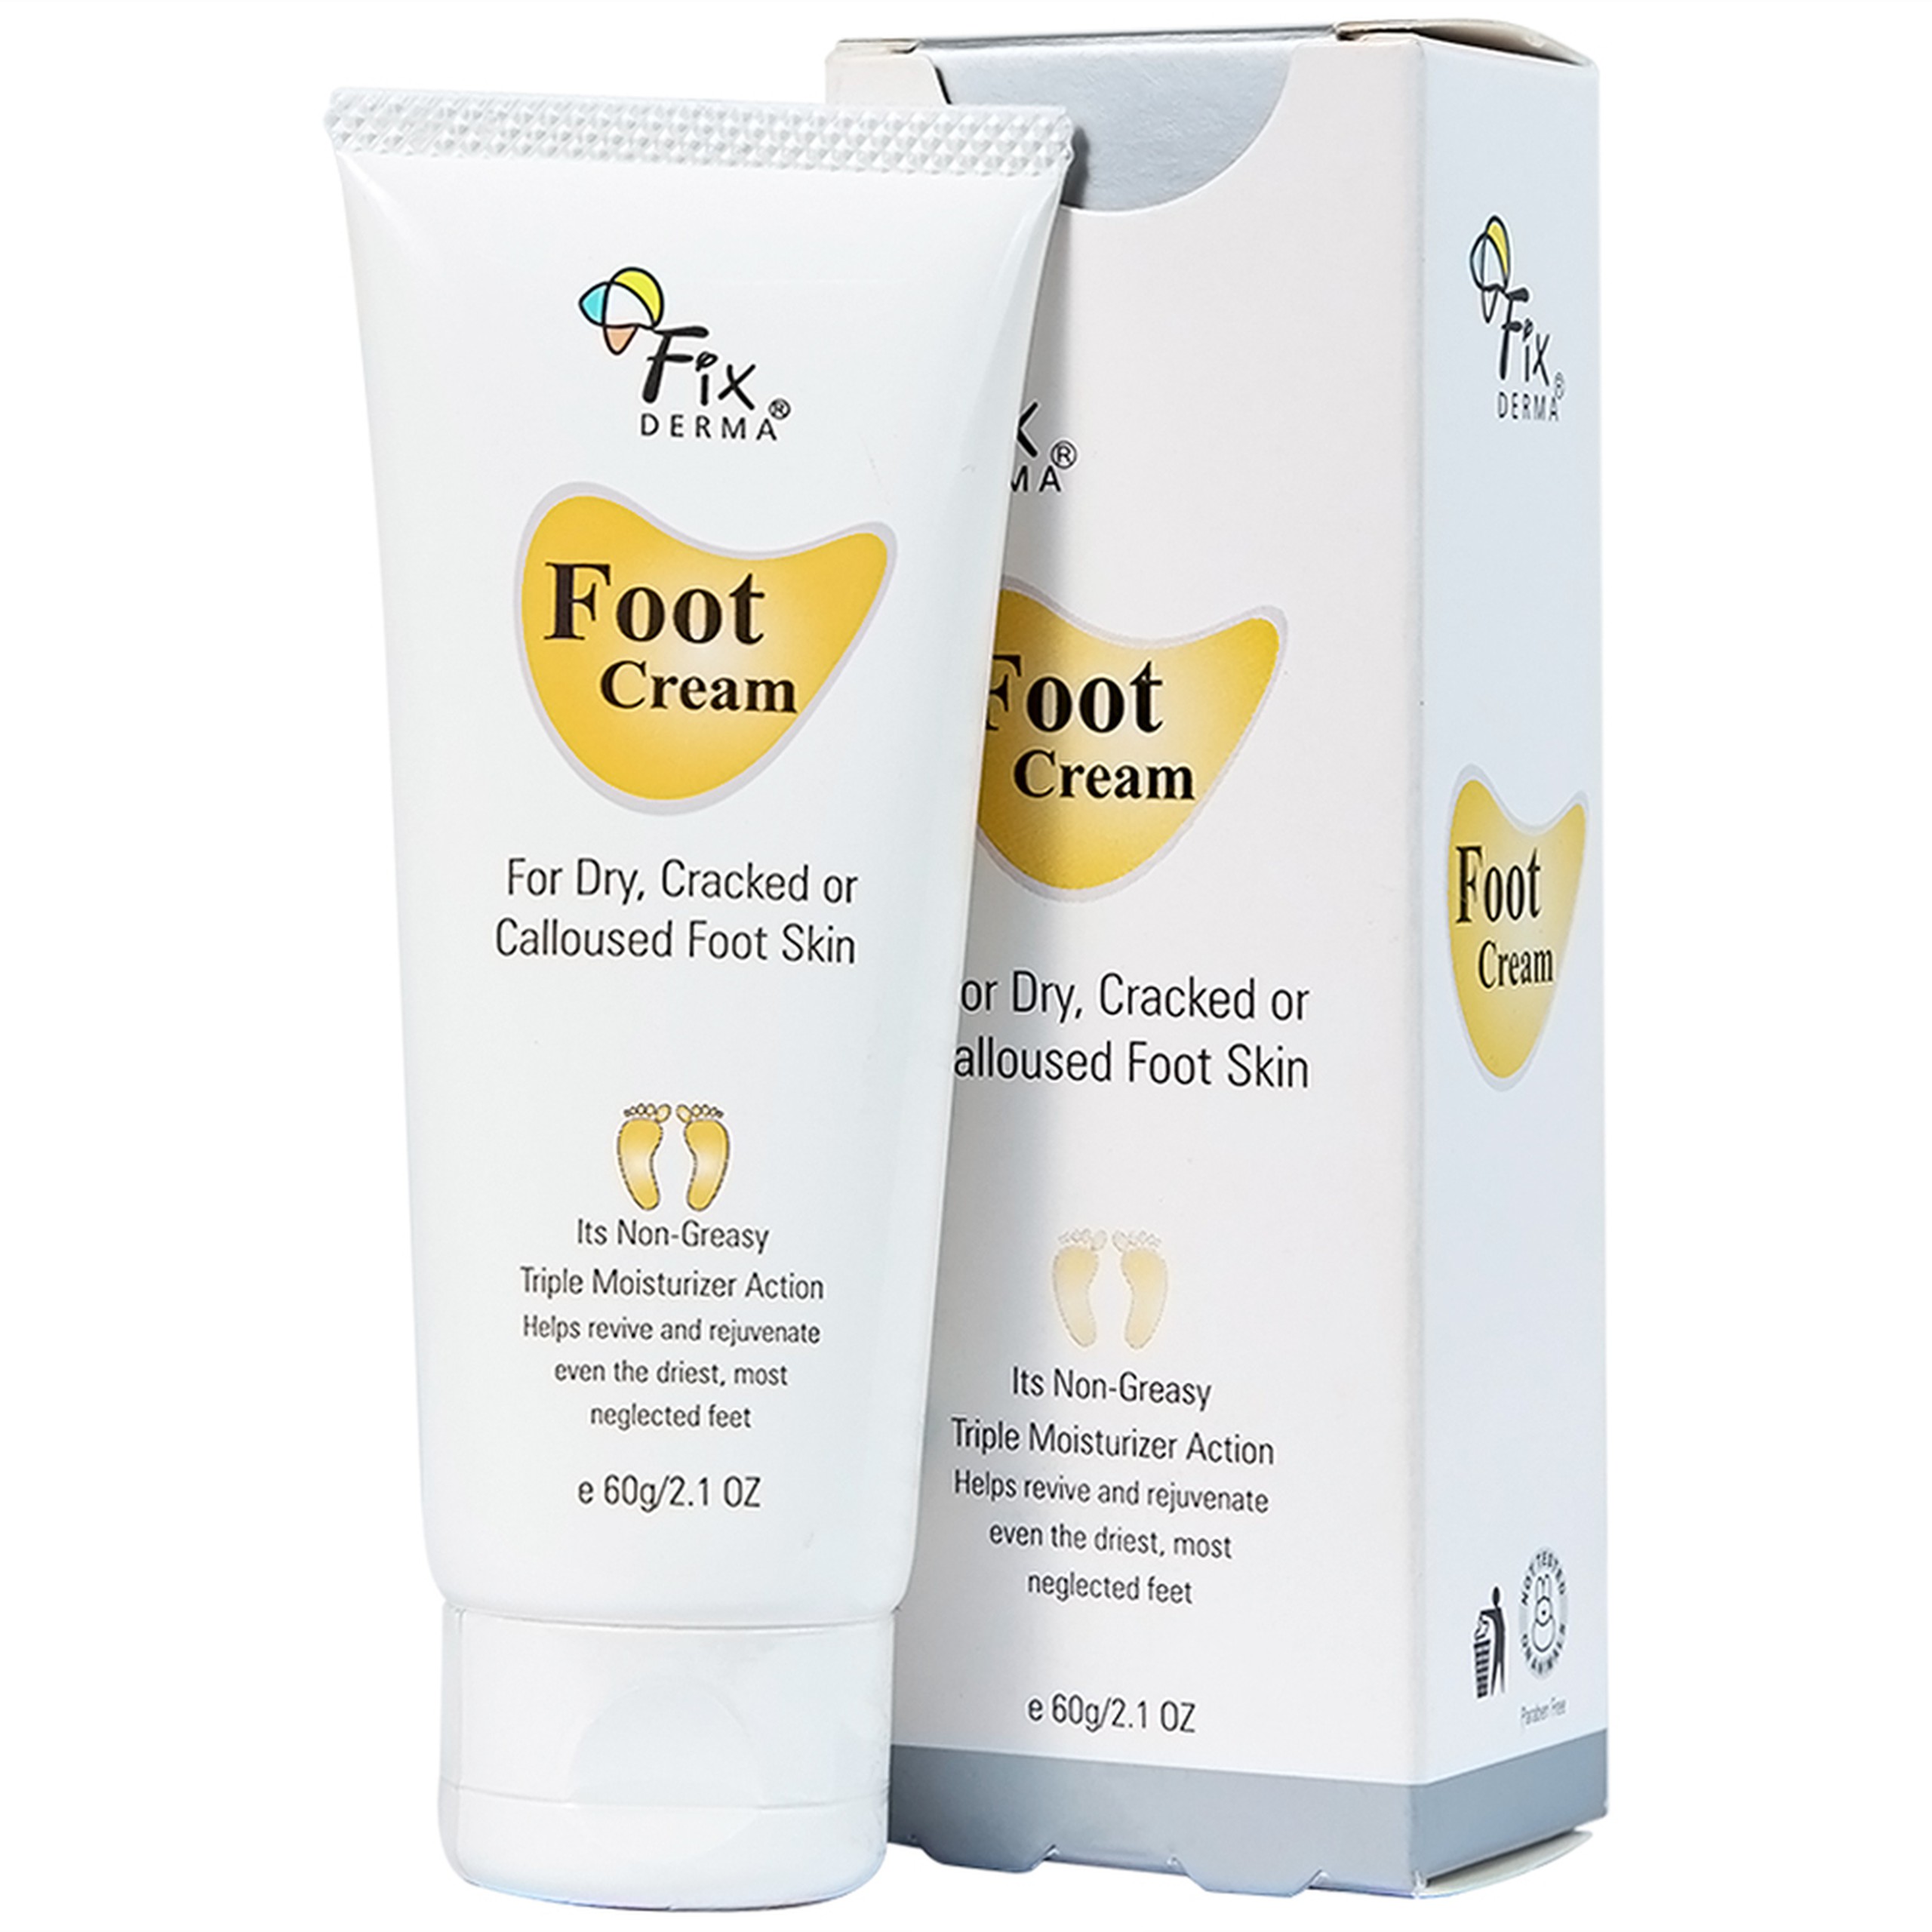 Kem dưỡng chống nứt gót chân Fixderma Foot Cream cung cấp độ ẩm, làm mềm da gót chân (60g)